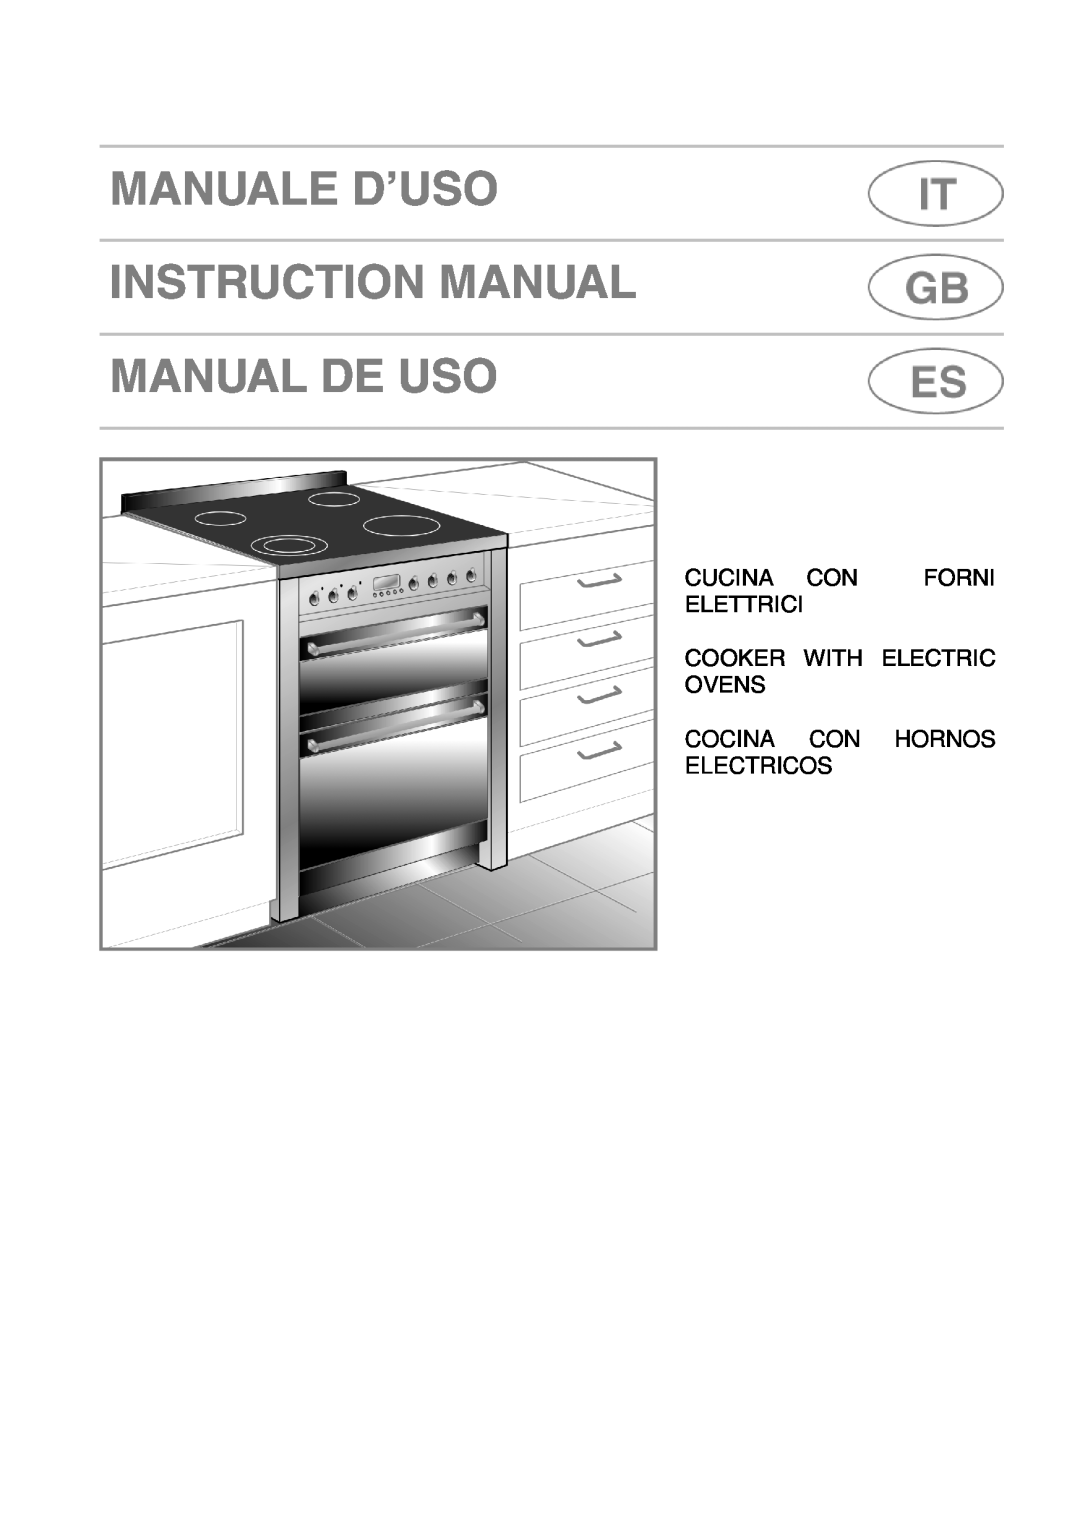 Smeg A42C instruction manual Cucina Con Forni Elettrici Cooker With Electric Ovens, Cocina Con Hornos Electricos 